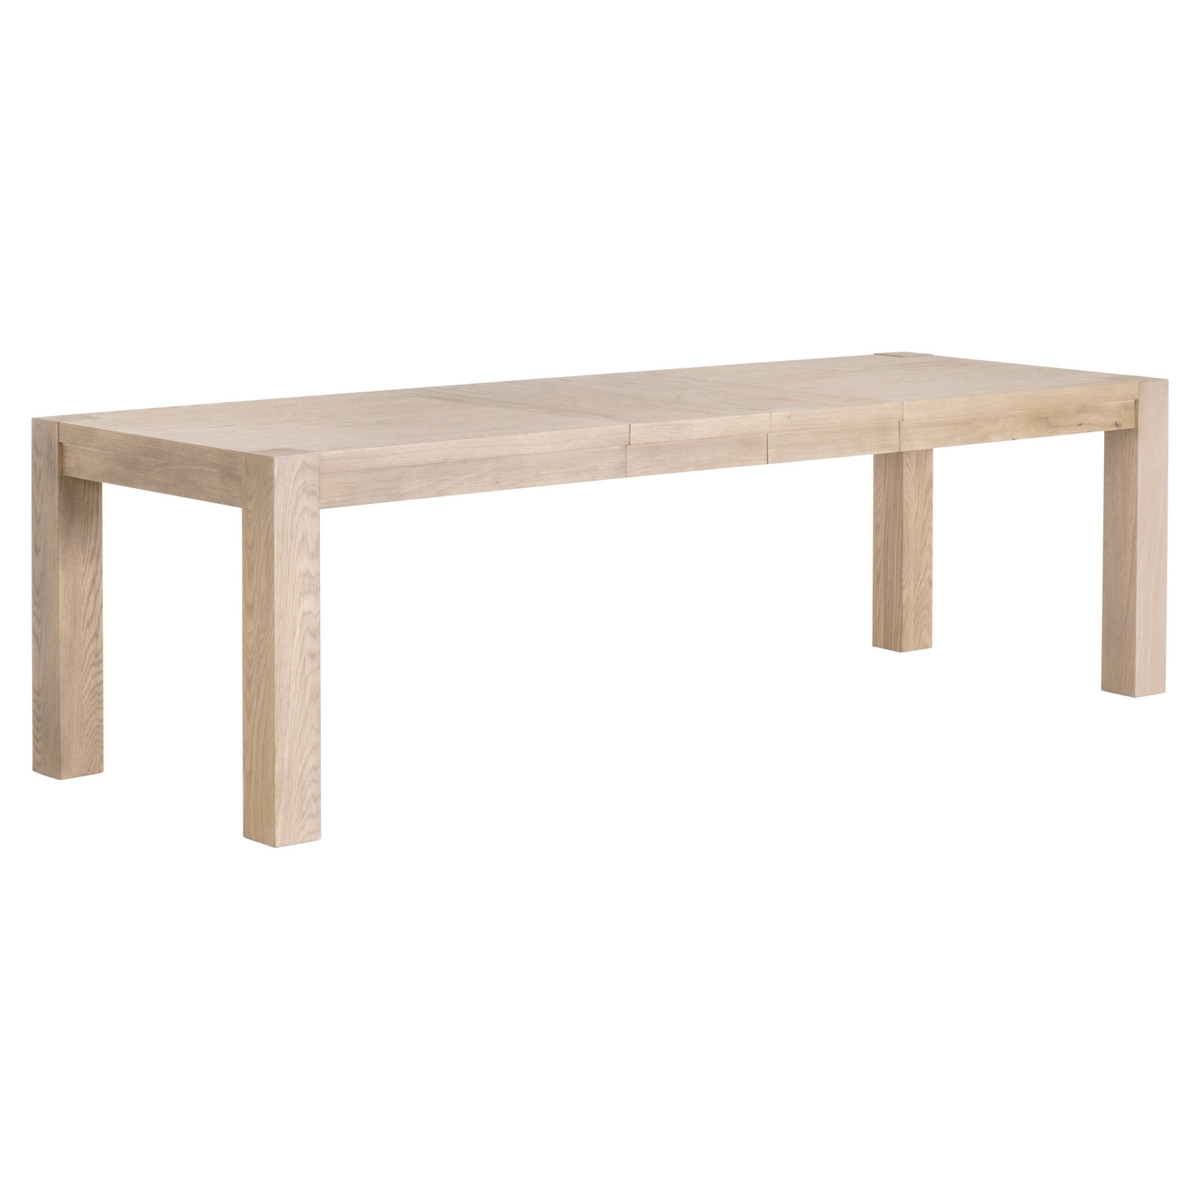 Adler Extension Dining Table /Light Honey Oak - Image 3